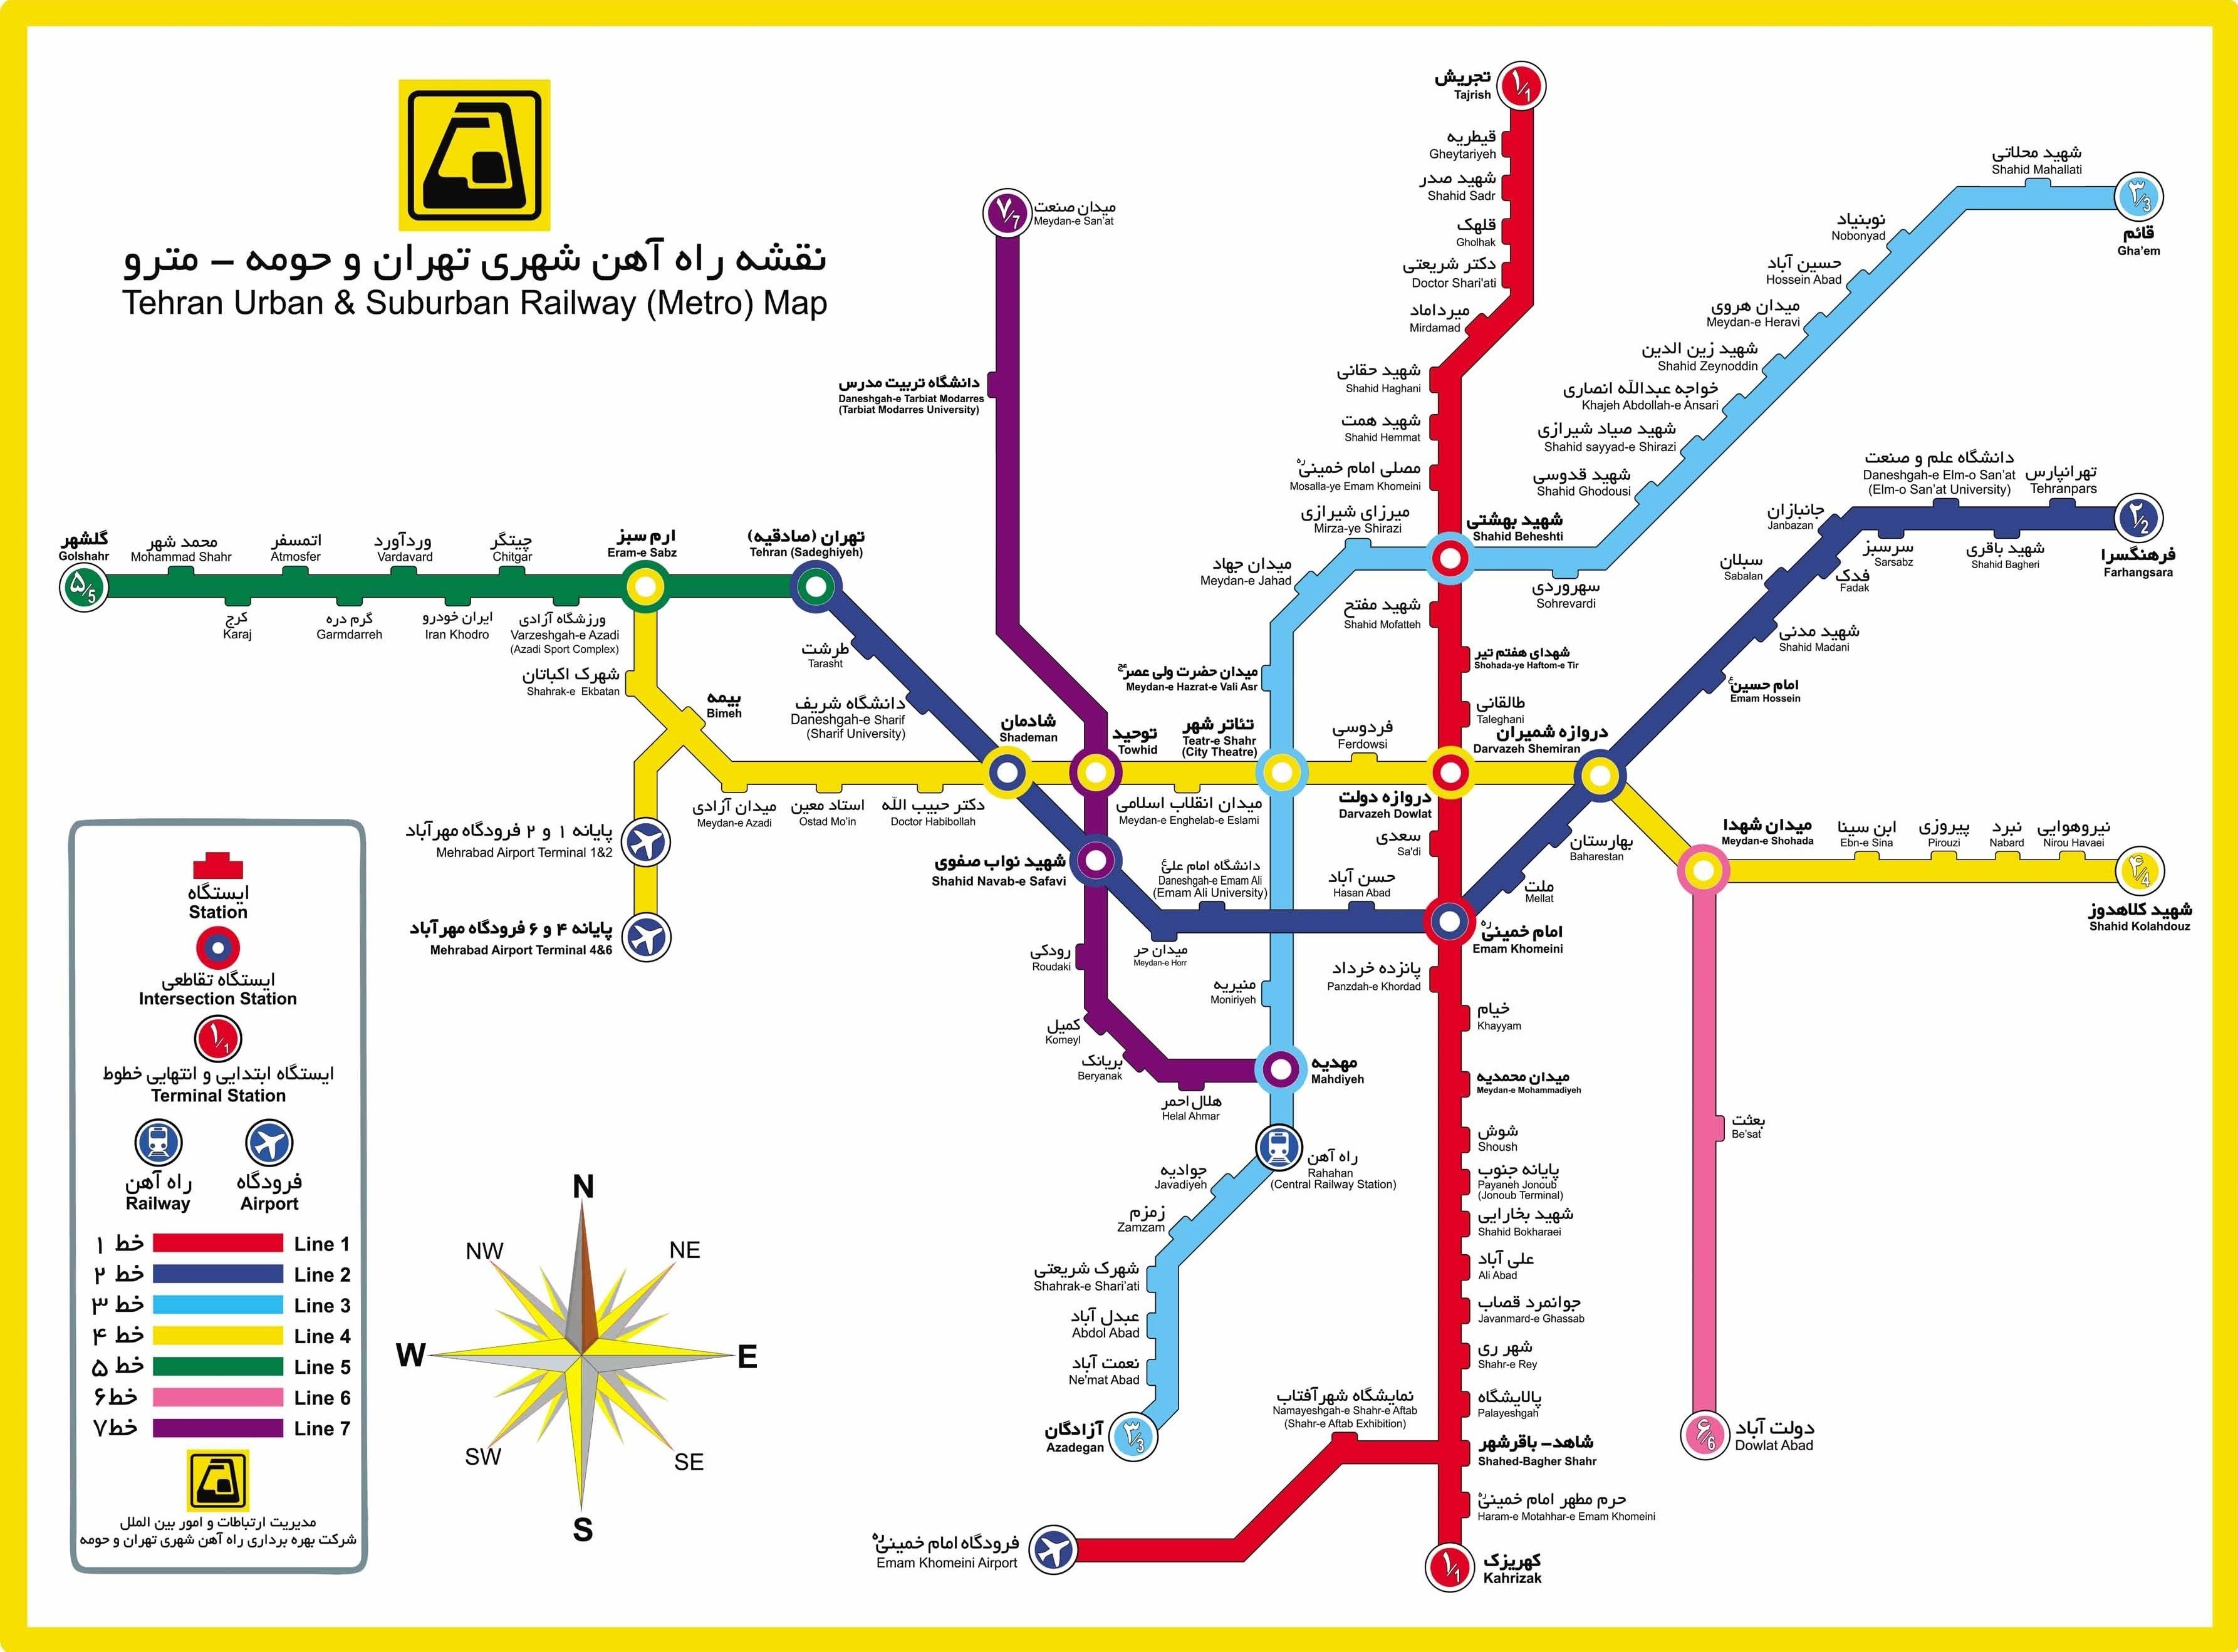 افزایش سفر ساکنان تهران با مترو در یک سال اخیر